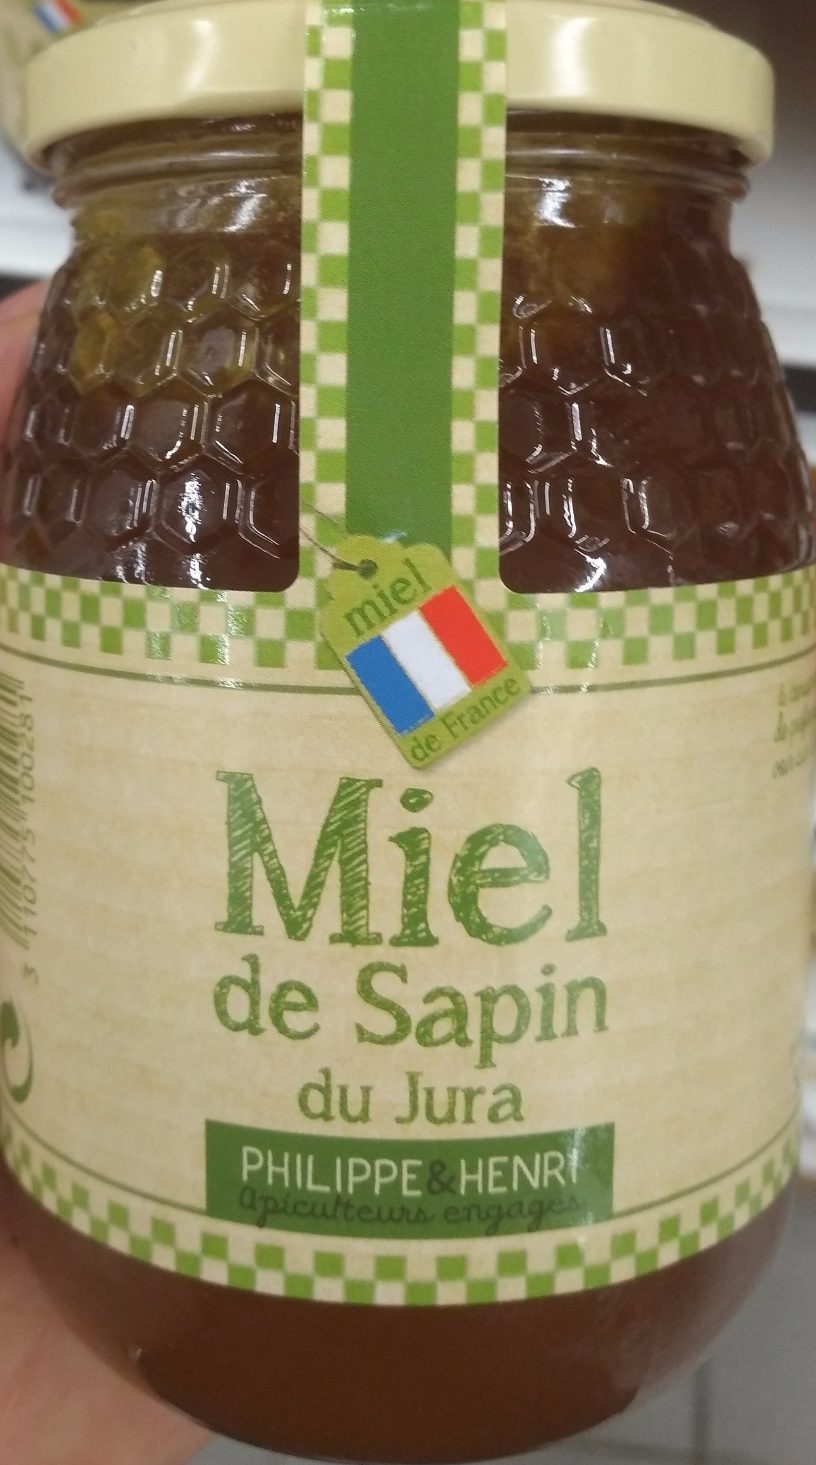 Miel de Sapin du Jura - Product - fr